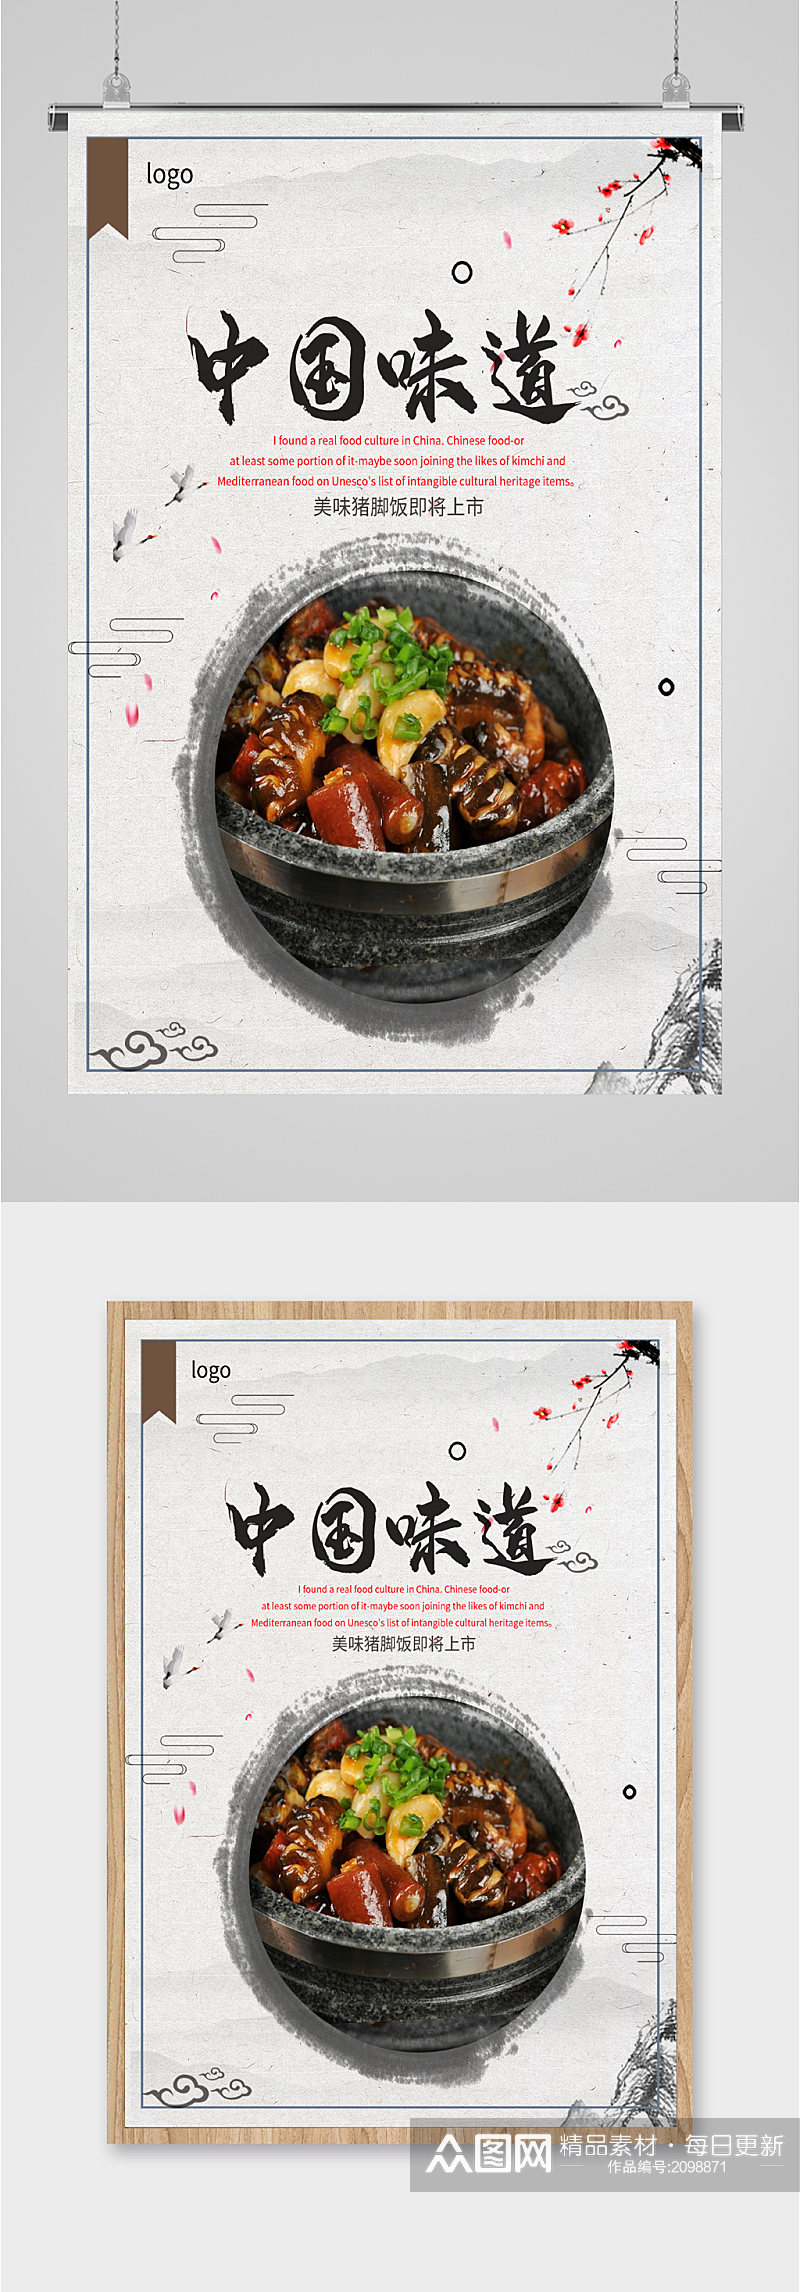 中国味道猪脚饭海报素材